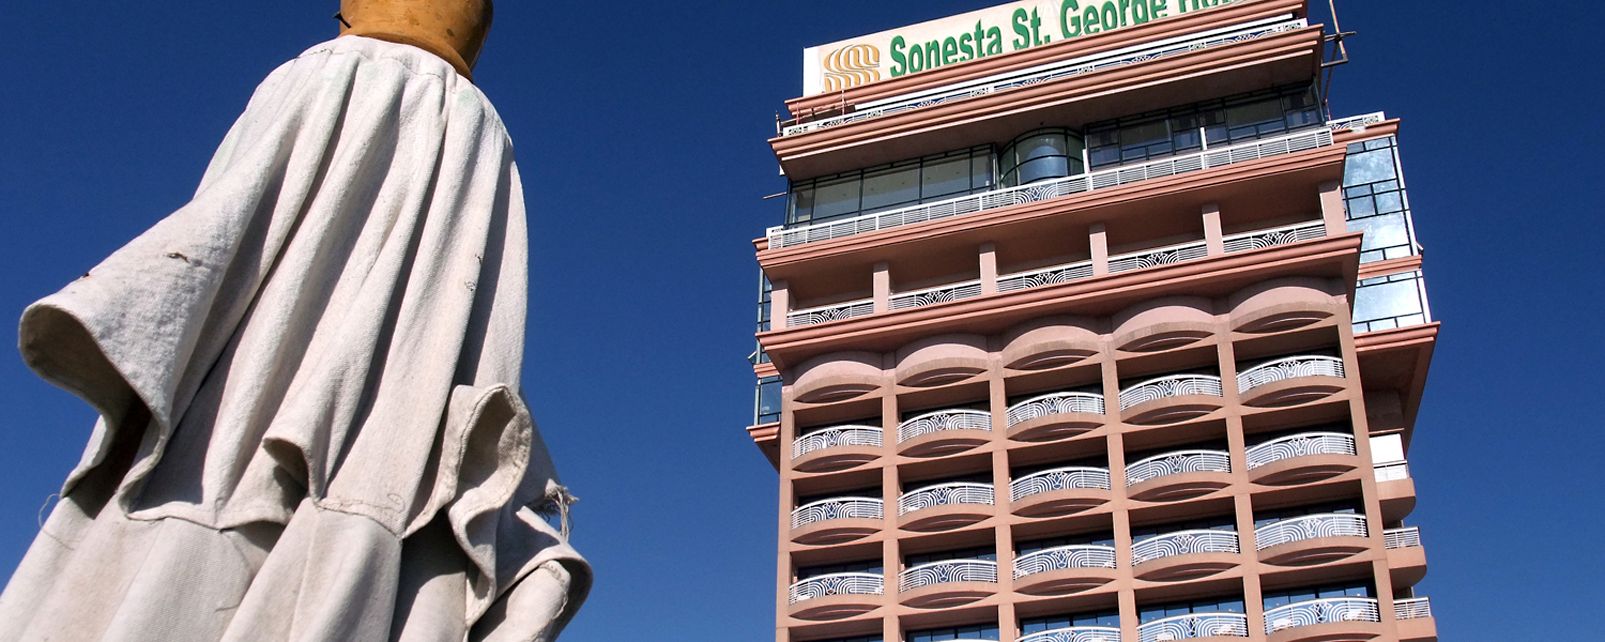 Hotel Sonesta Saint-George